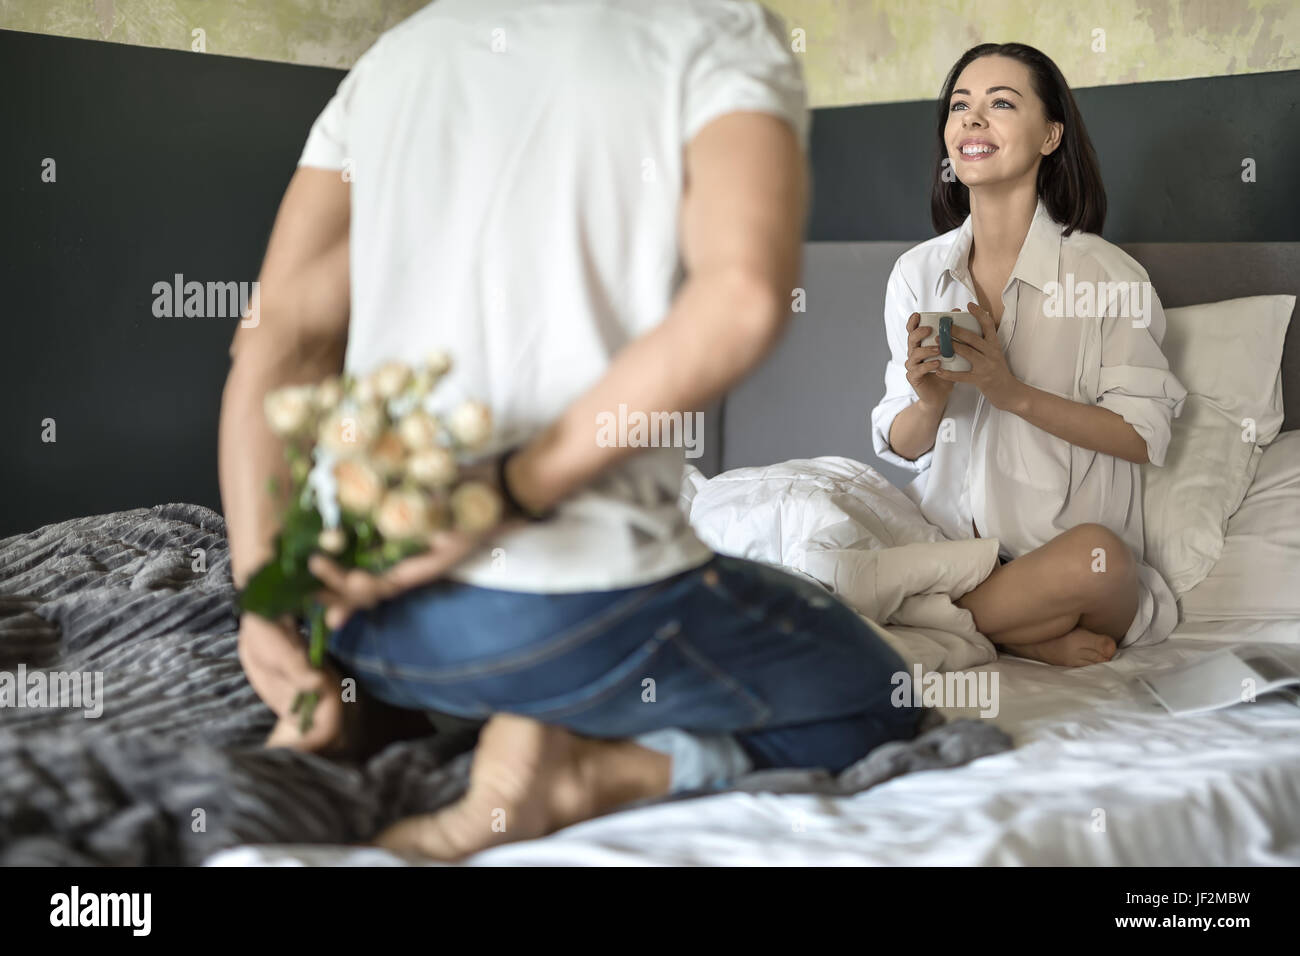 Mann in Blue Jeans und weißes T-shirt hält einen Strauß Rosen hinter seinem Rücken. Er sitzt auf dem Bett gegenüber seiner lächelnden Freundin in ein weißes Hemd mit Stockfoto